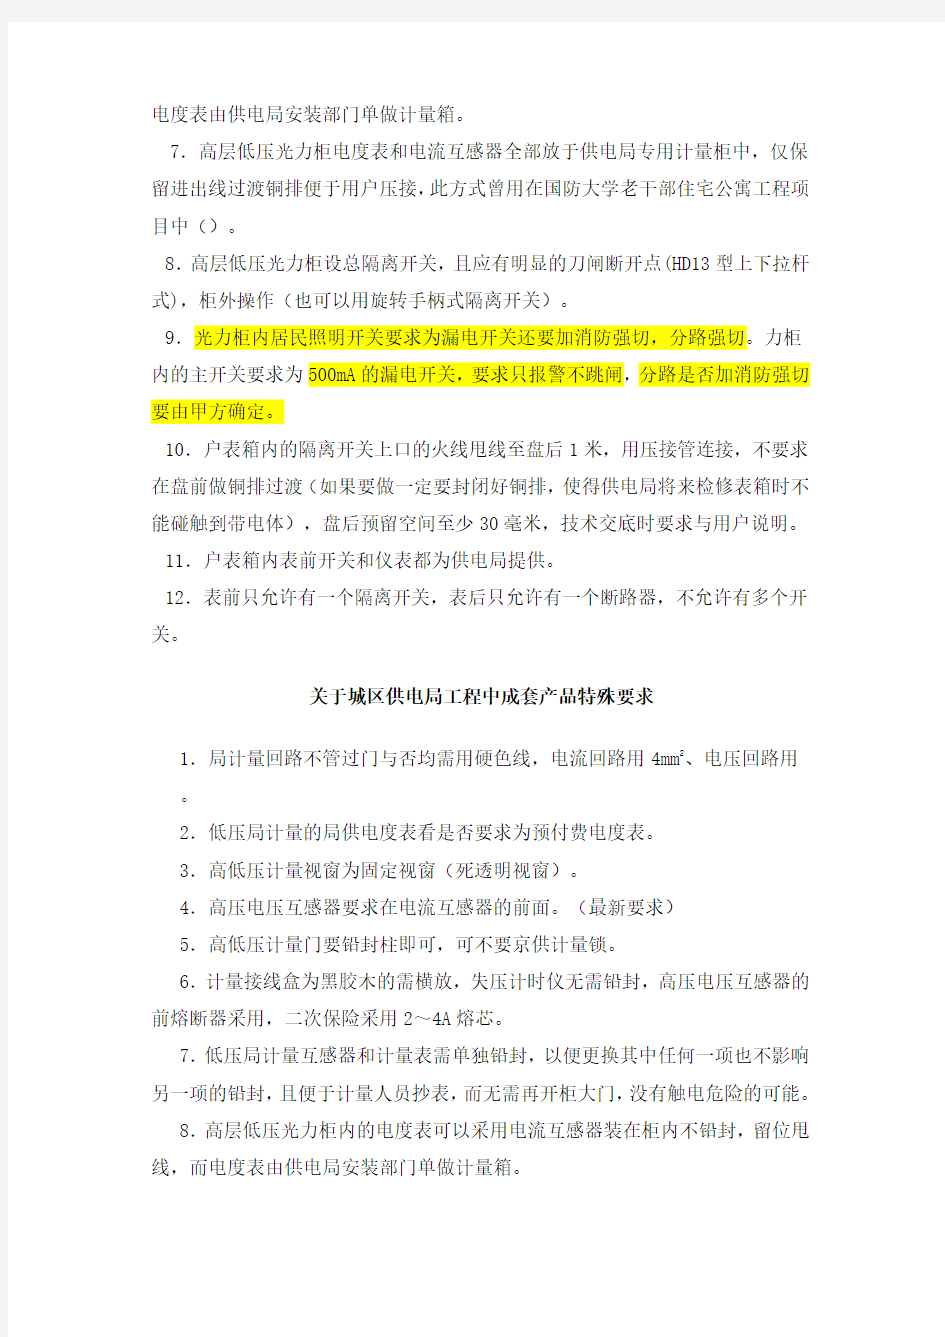 关于北京各区供电局在高低压成套产品的特殊要求